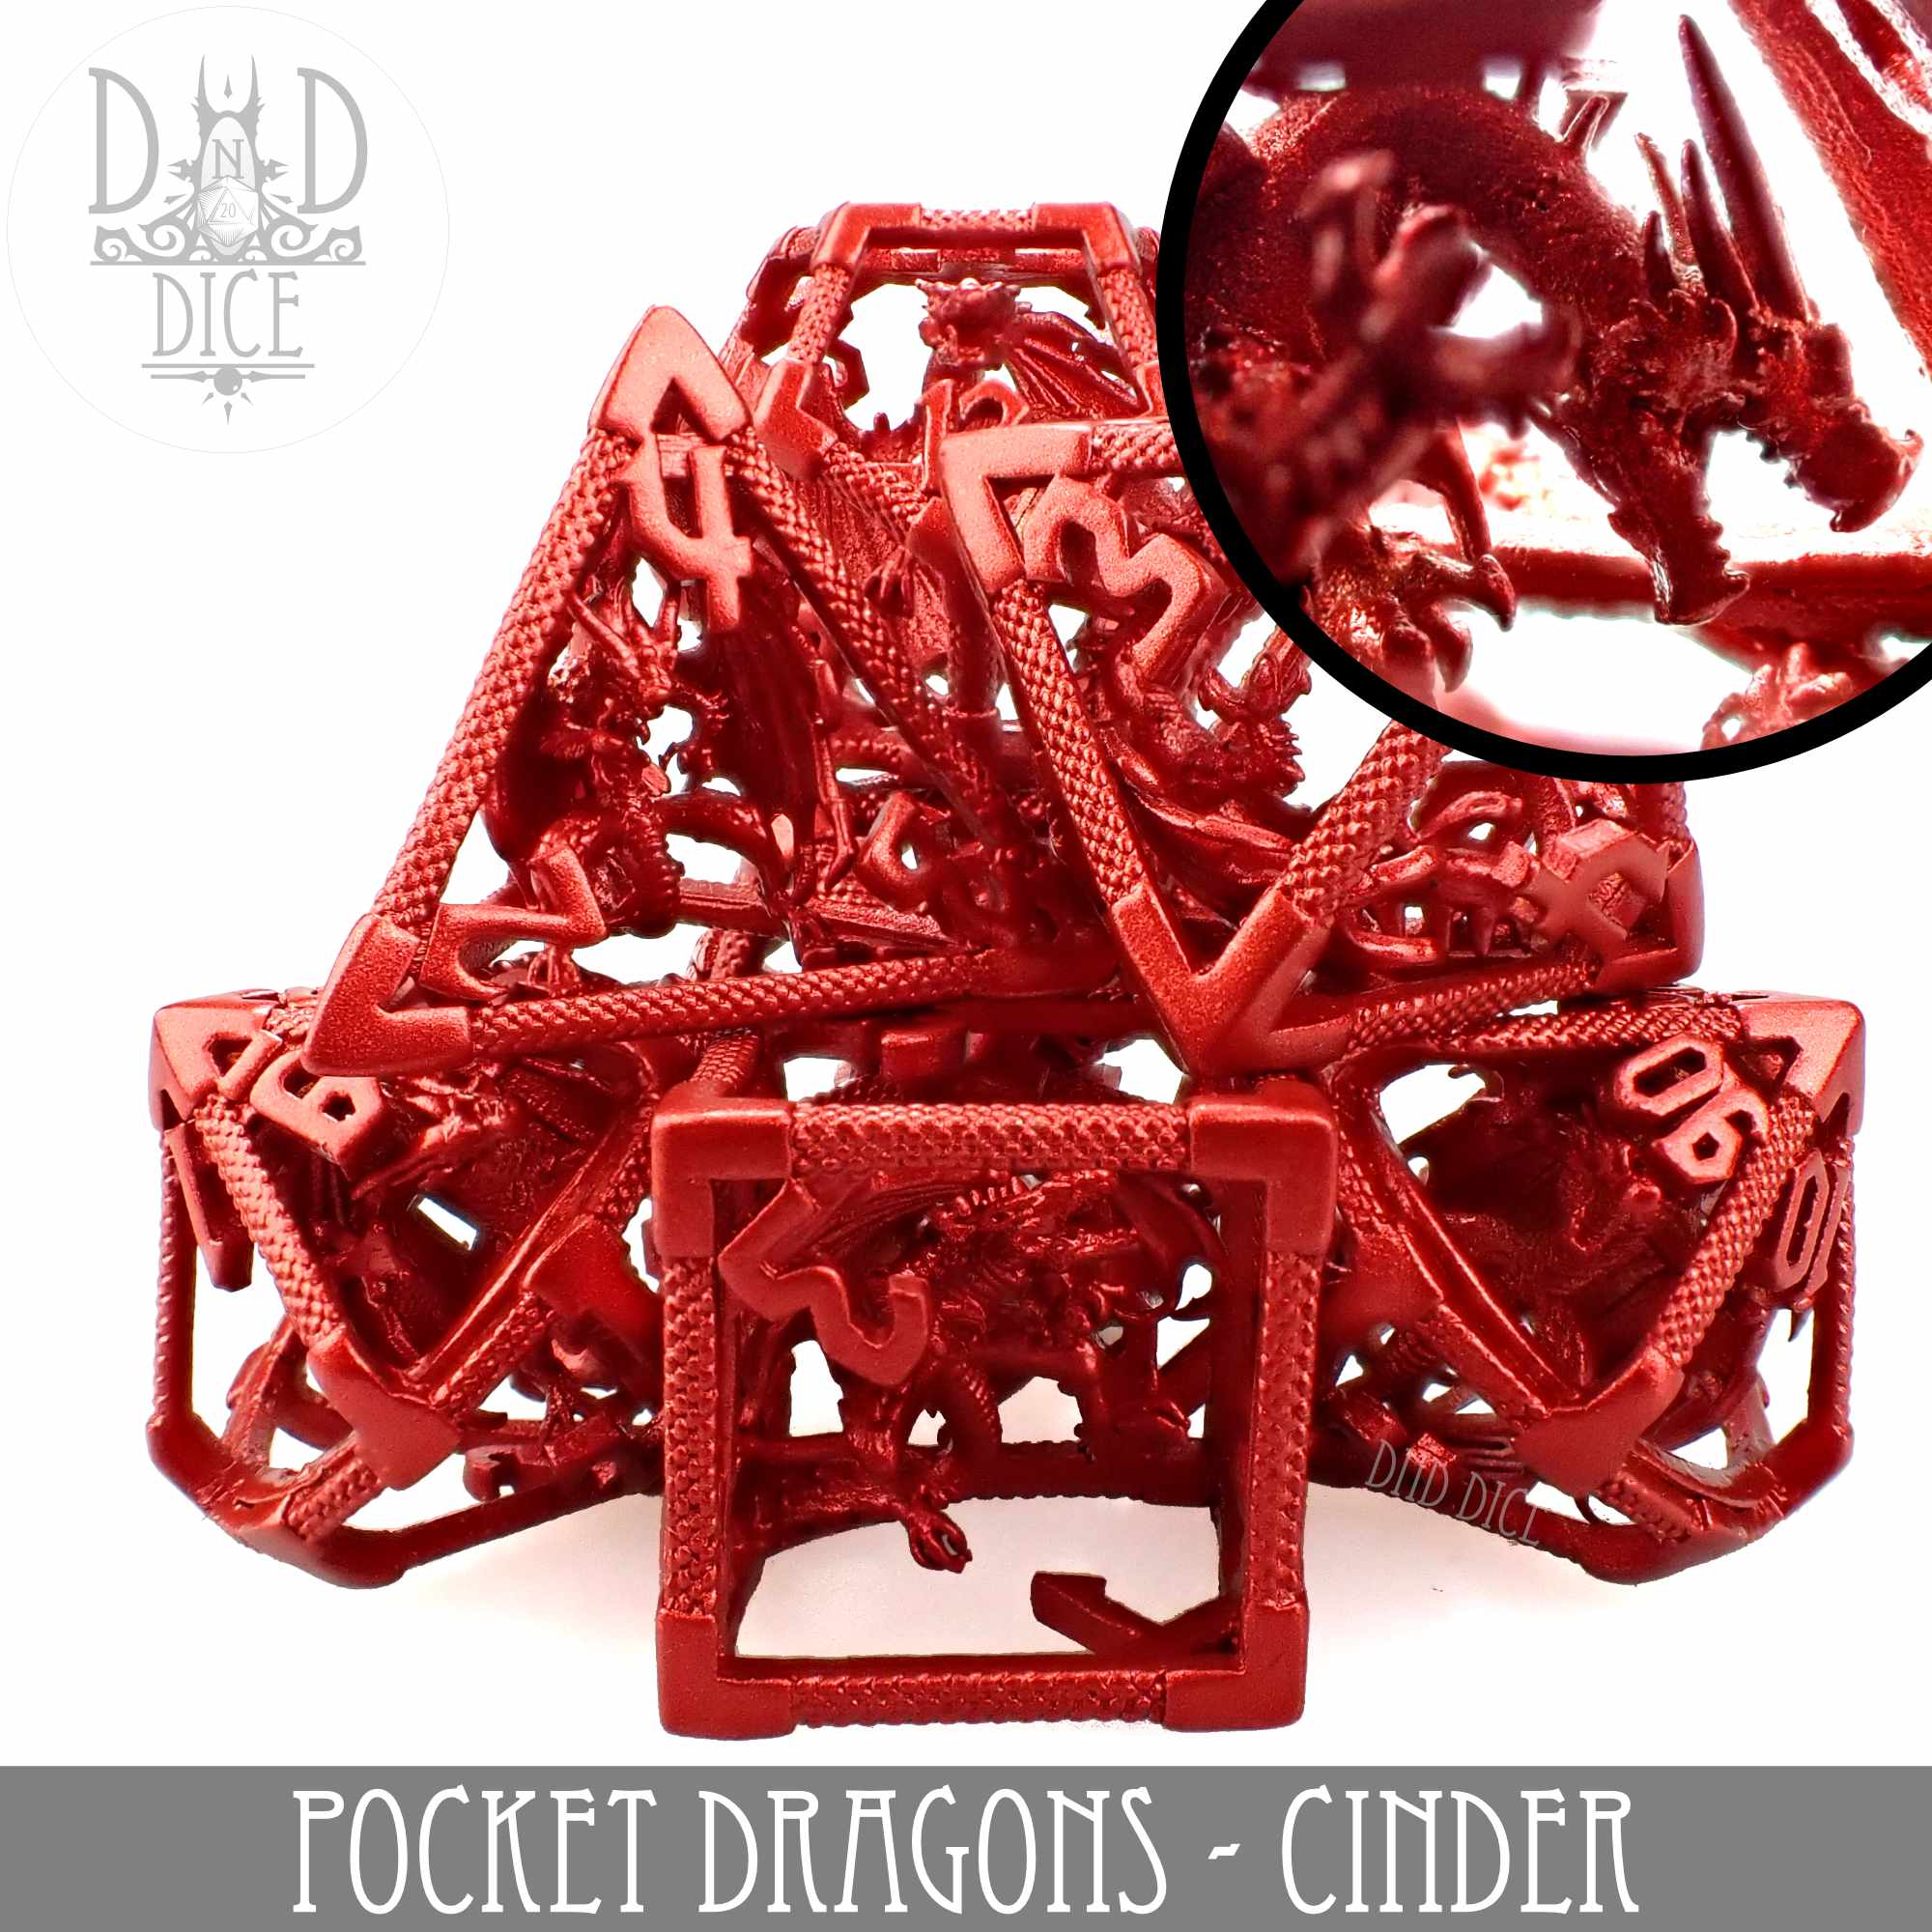 Pocket Dragons Cinder - Metal (Gift Box)